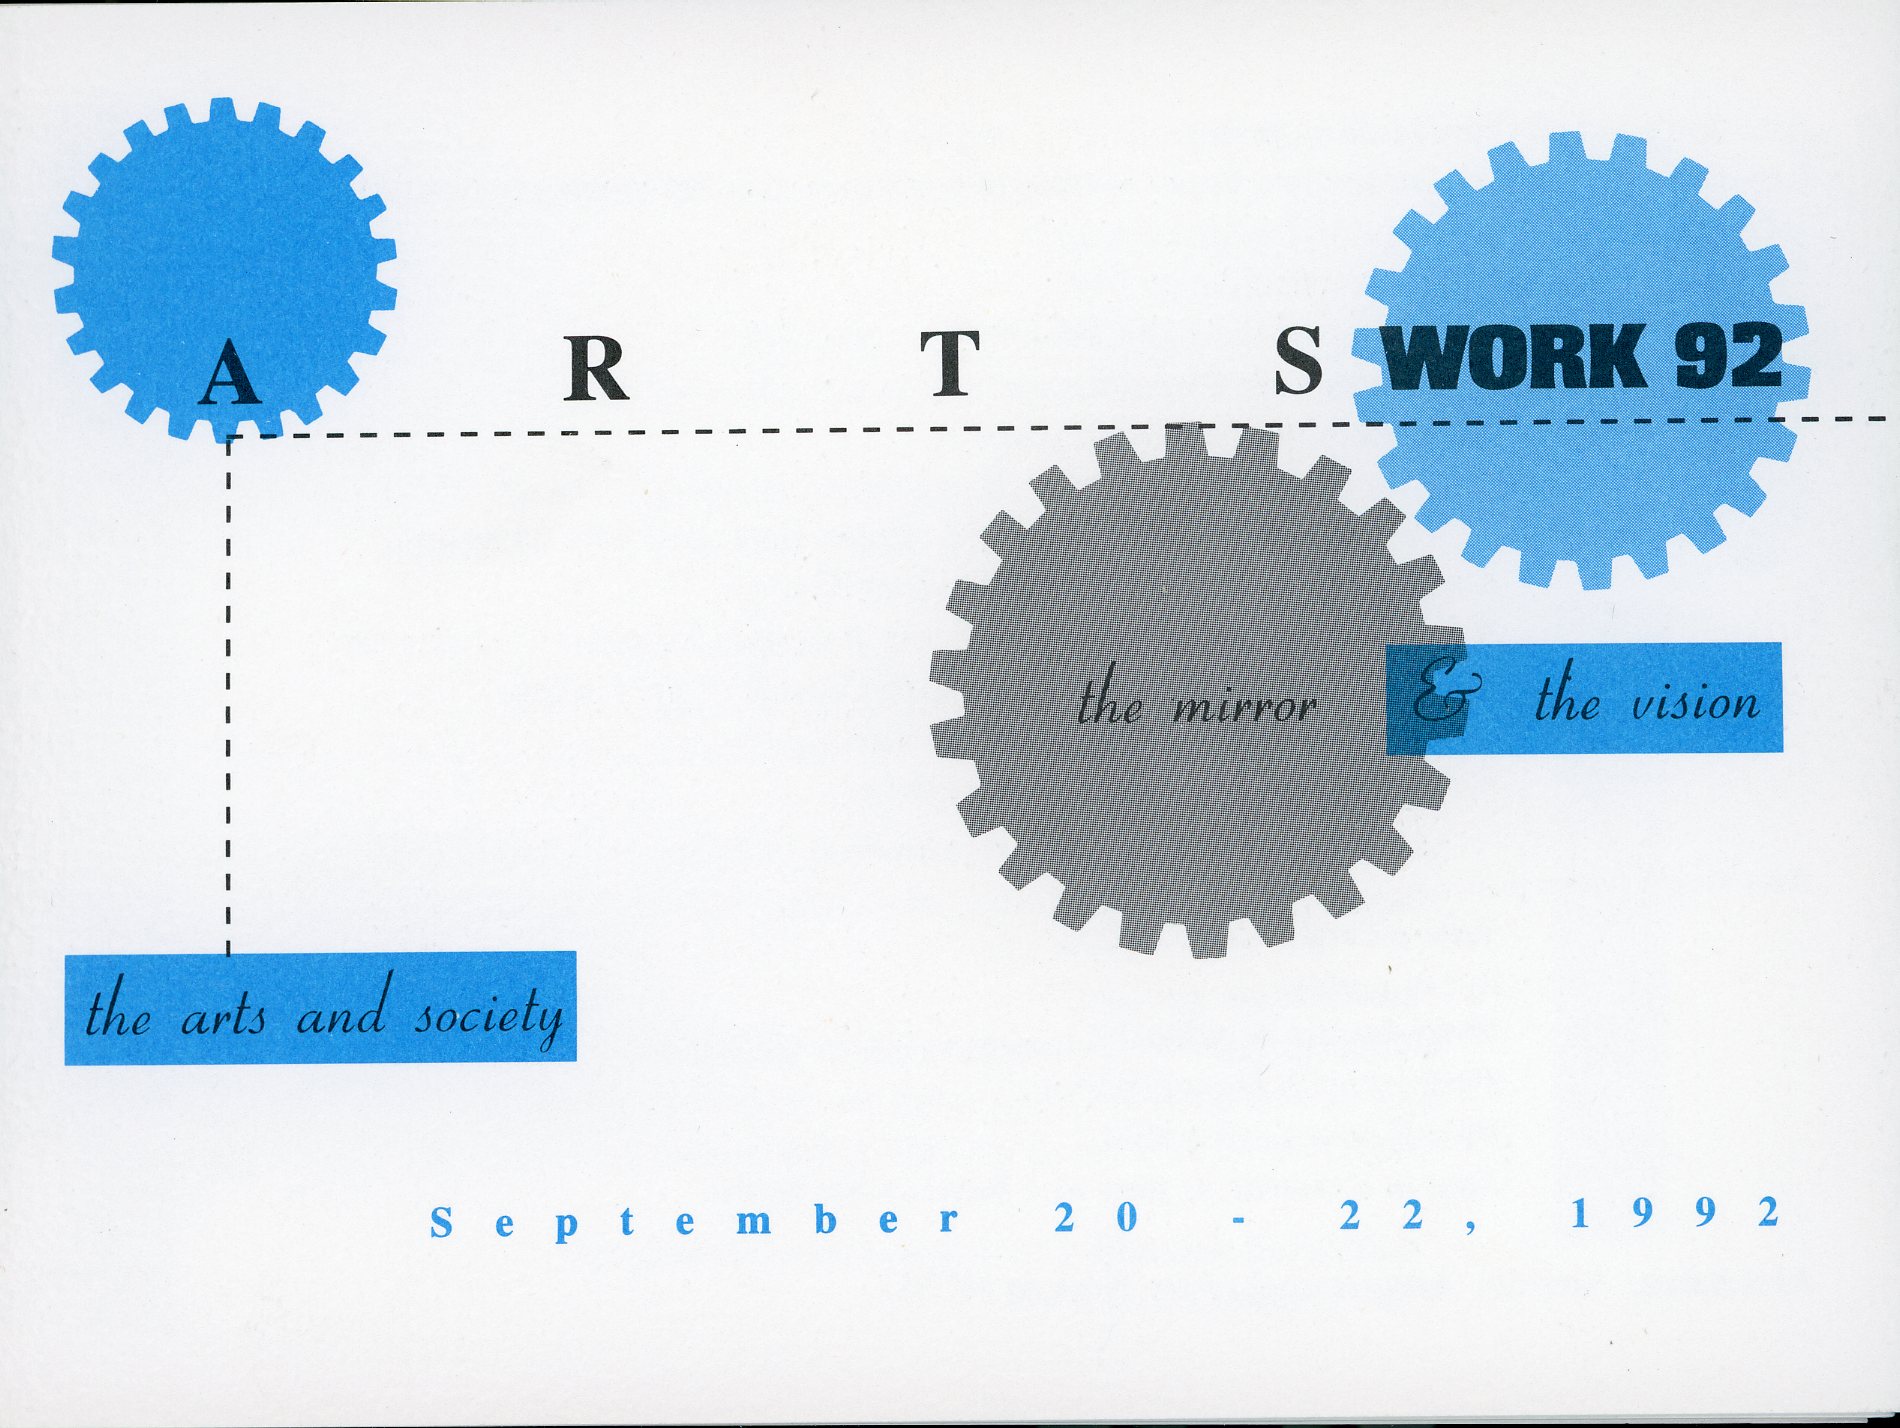 Event calendar for "ARTSWORK 92", September 20-22, 1992